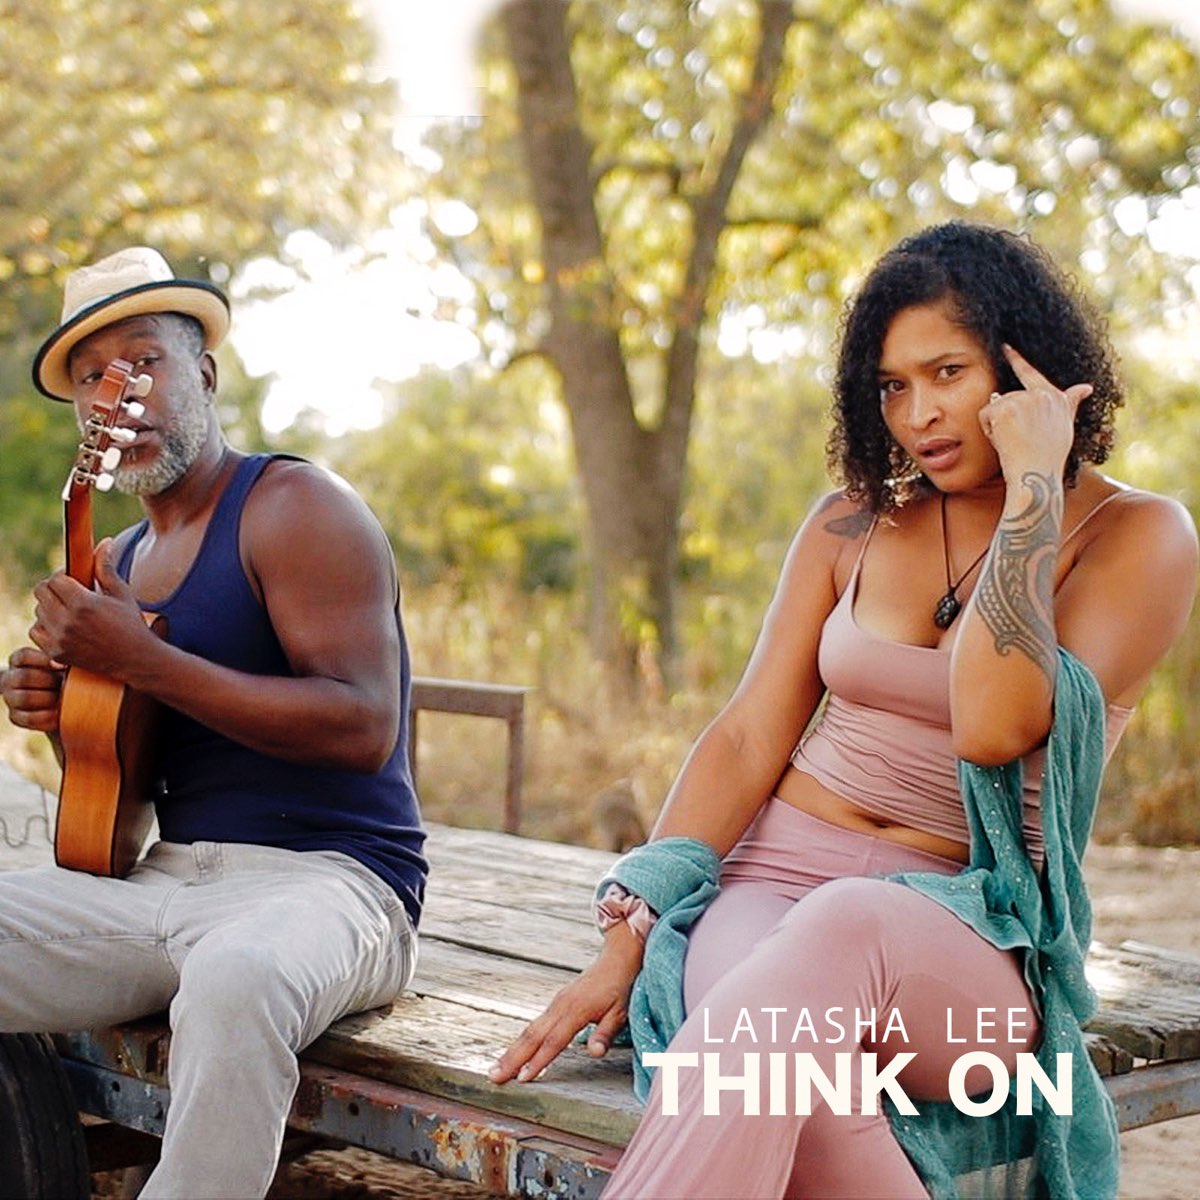 Think On - Single by Latasha Lee on Apple Music